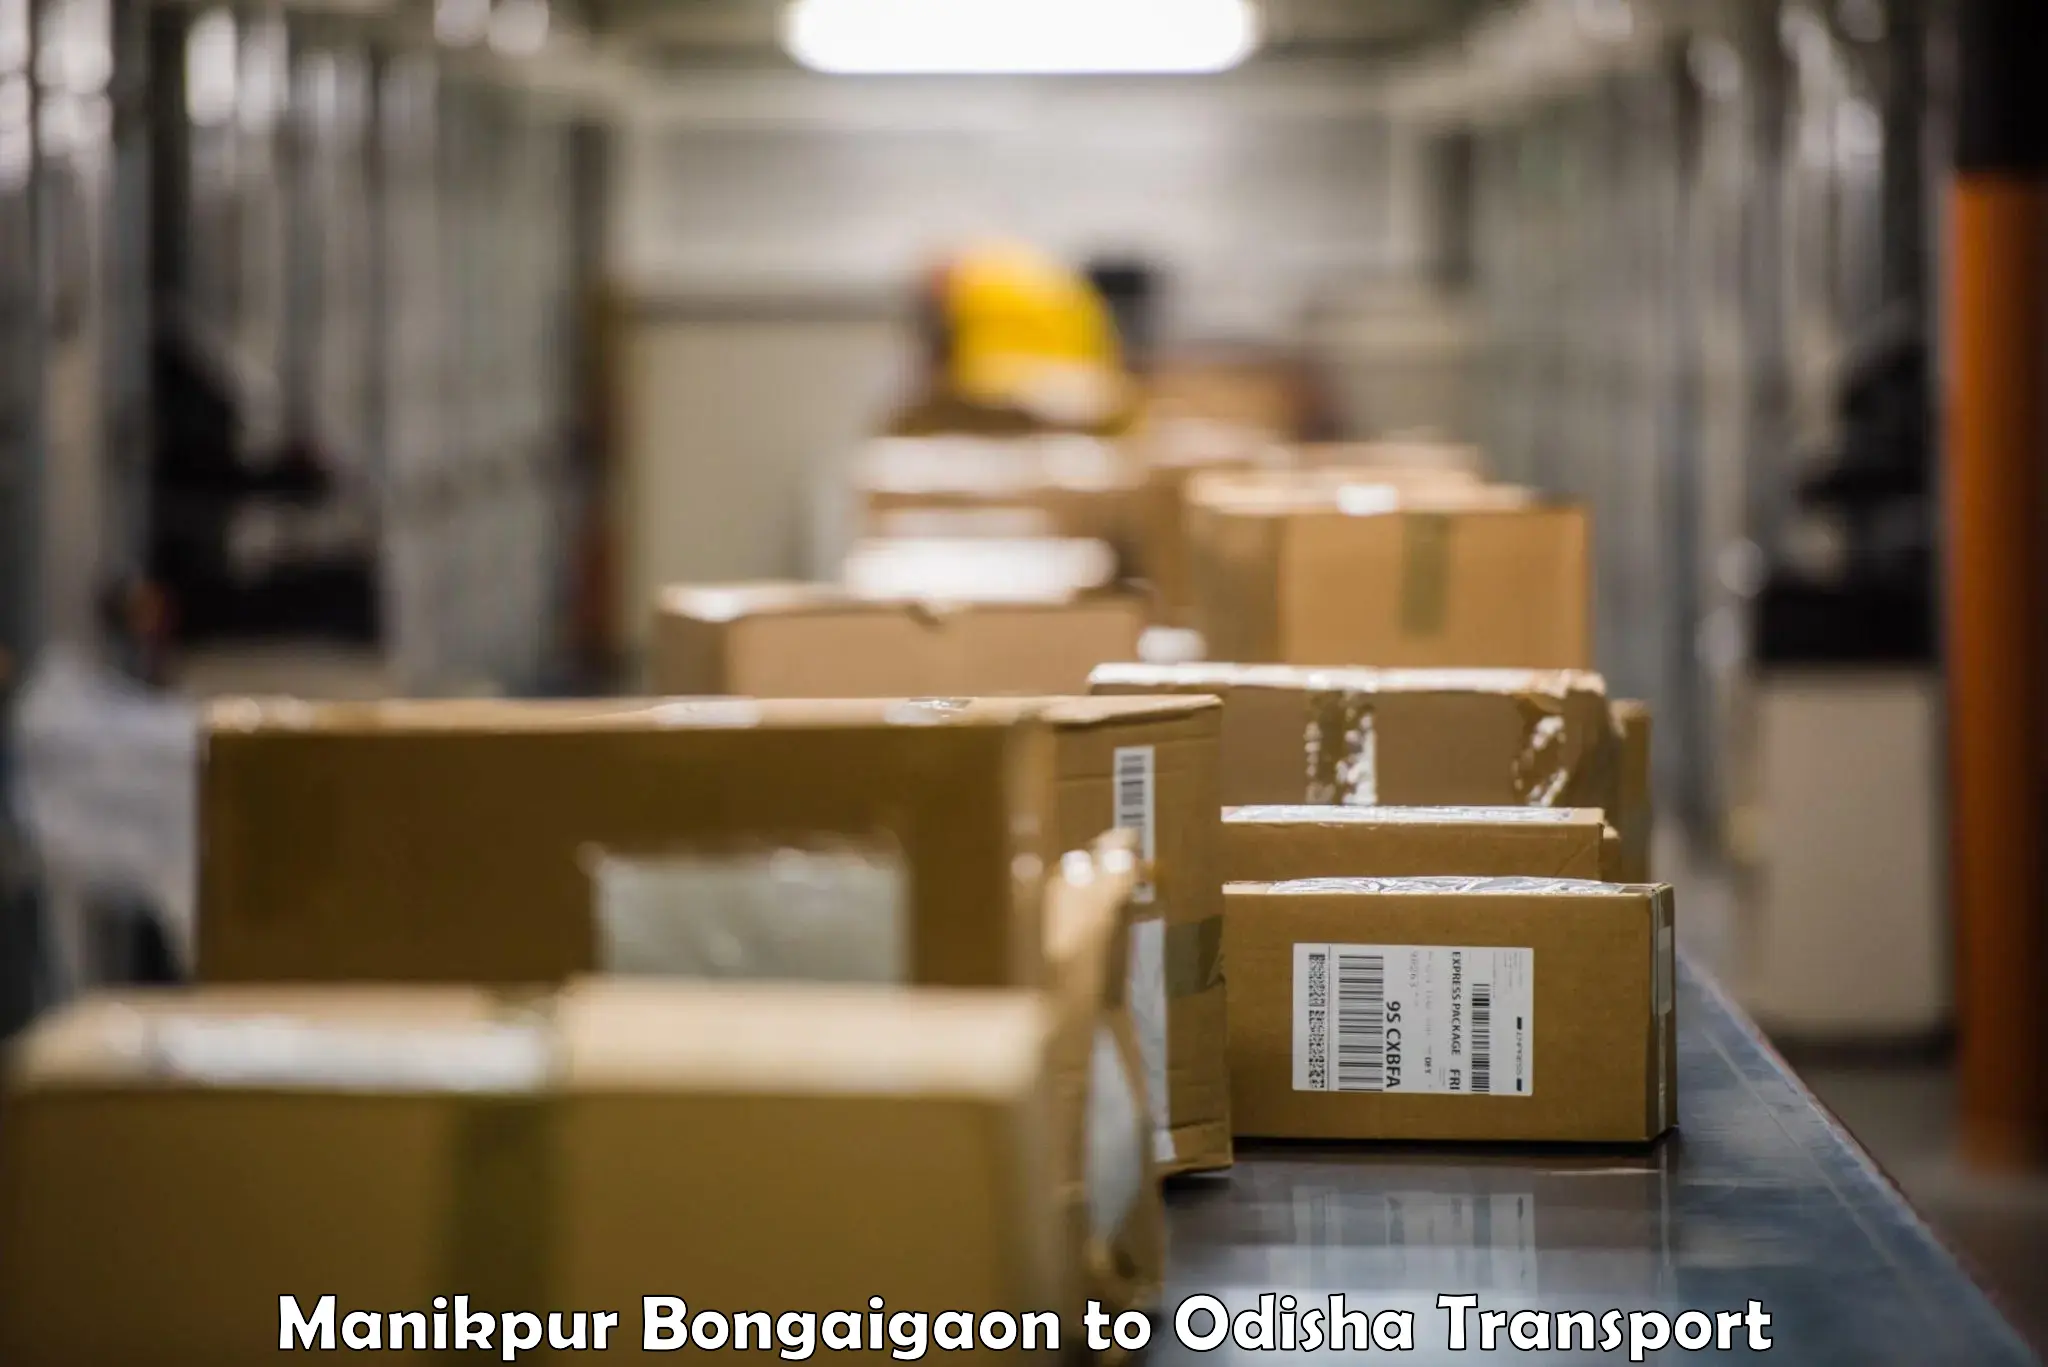 Furniture transport service Manikpur Bongaigaon to Bamra